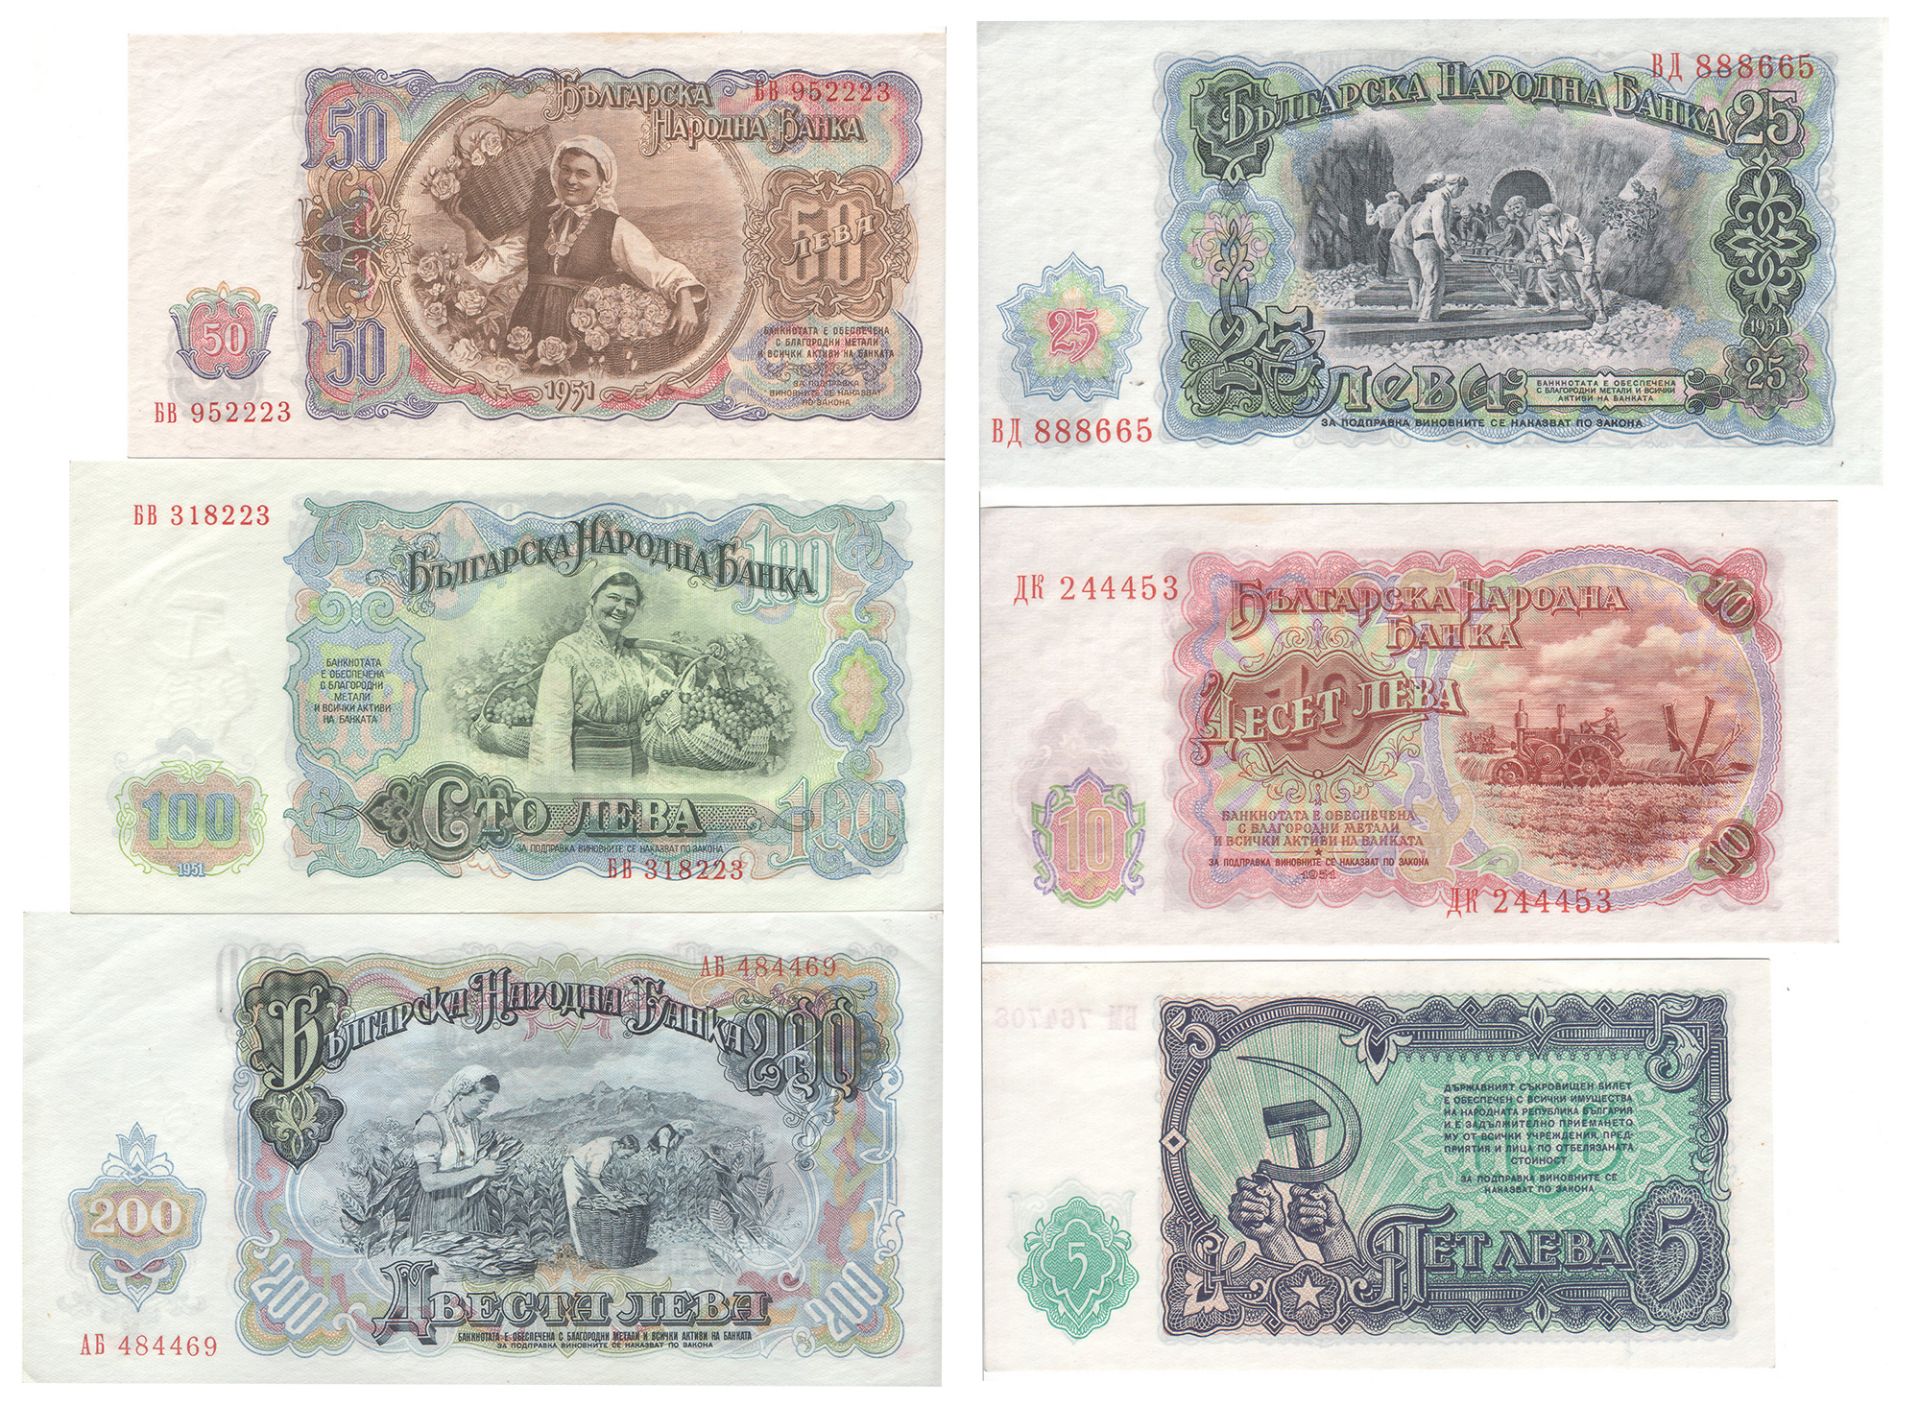 Bulgarien 1951, 5-, 10-, 25-, 50-, 100- und 200 Lewa Banknoten. Erhaltung: vz. - Image 2 of 2